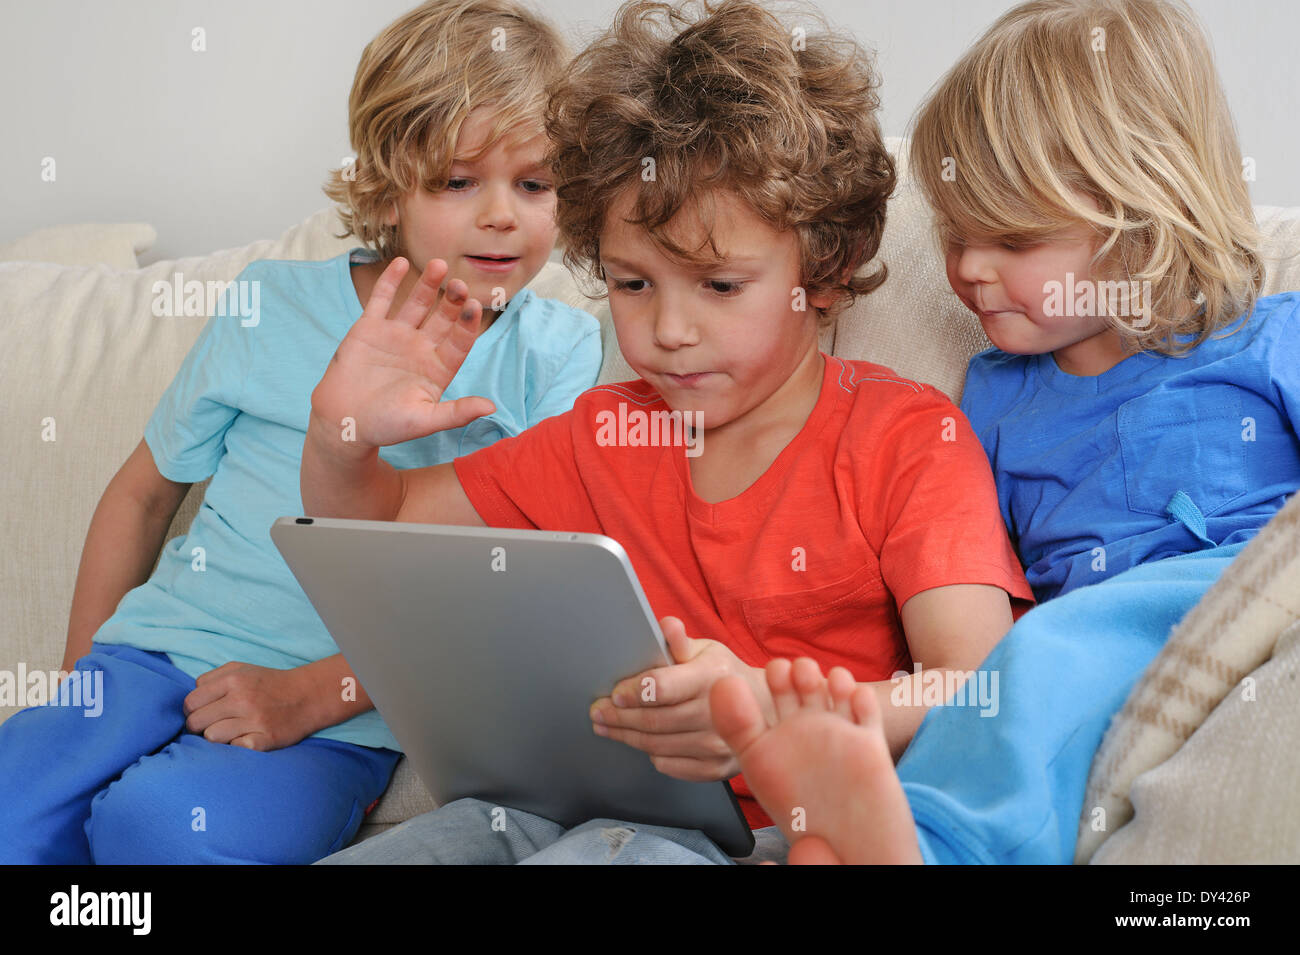 Ein ca. 8-9 Jahre alt spielt ein Spiel auf einem Touch-Screen-Tablette. Seine jüngeren Brüder beobachten jede Bewegung intensiv Stockfoto